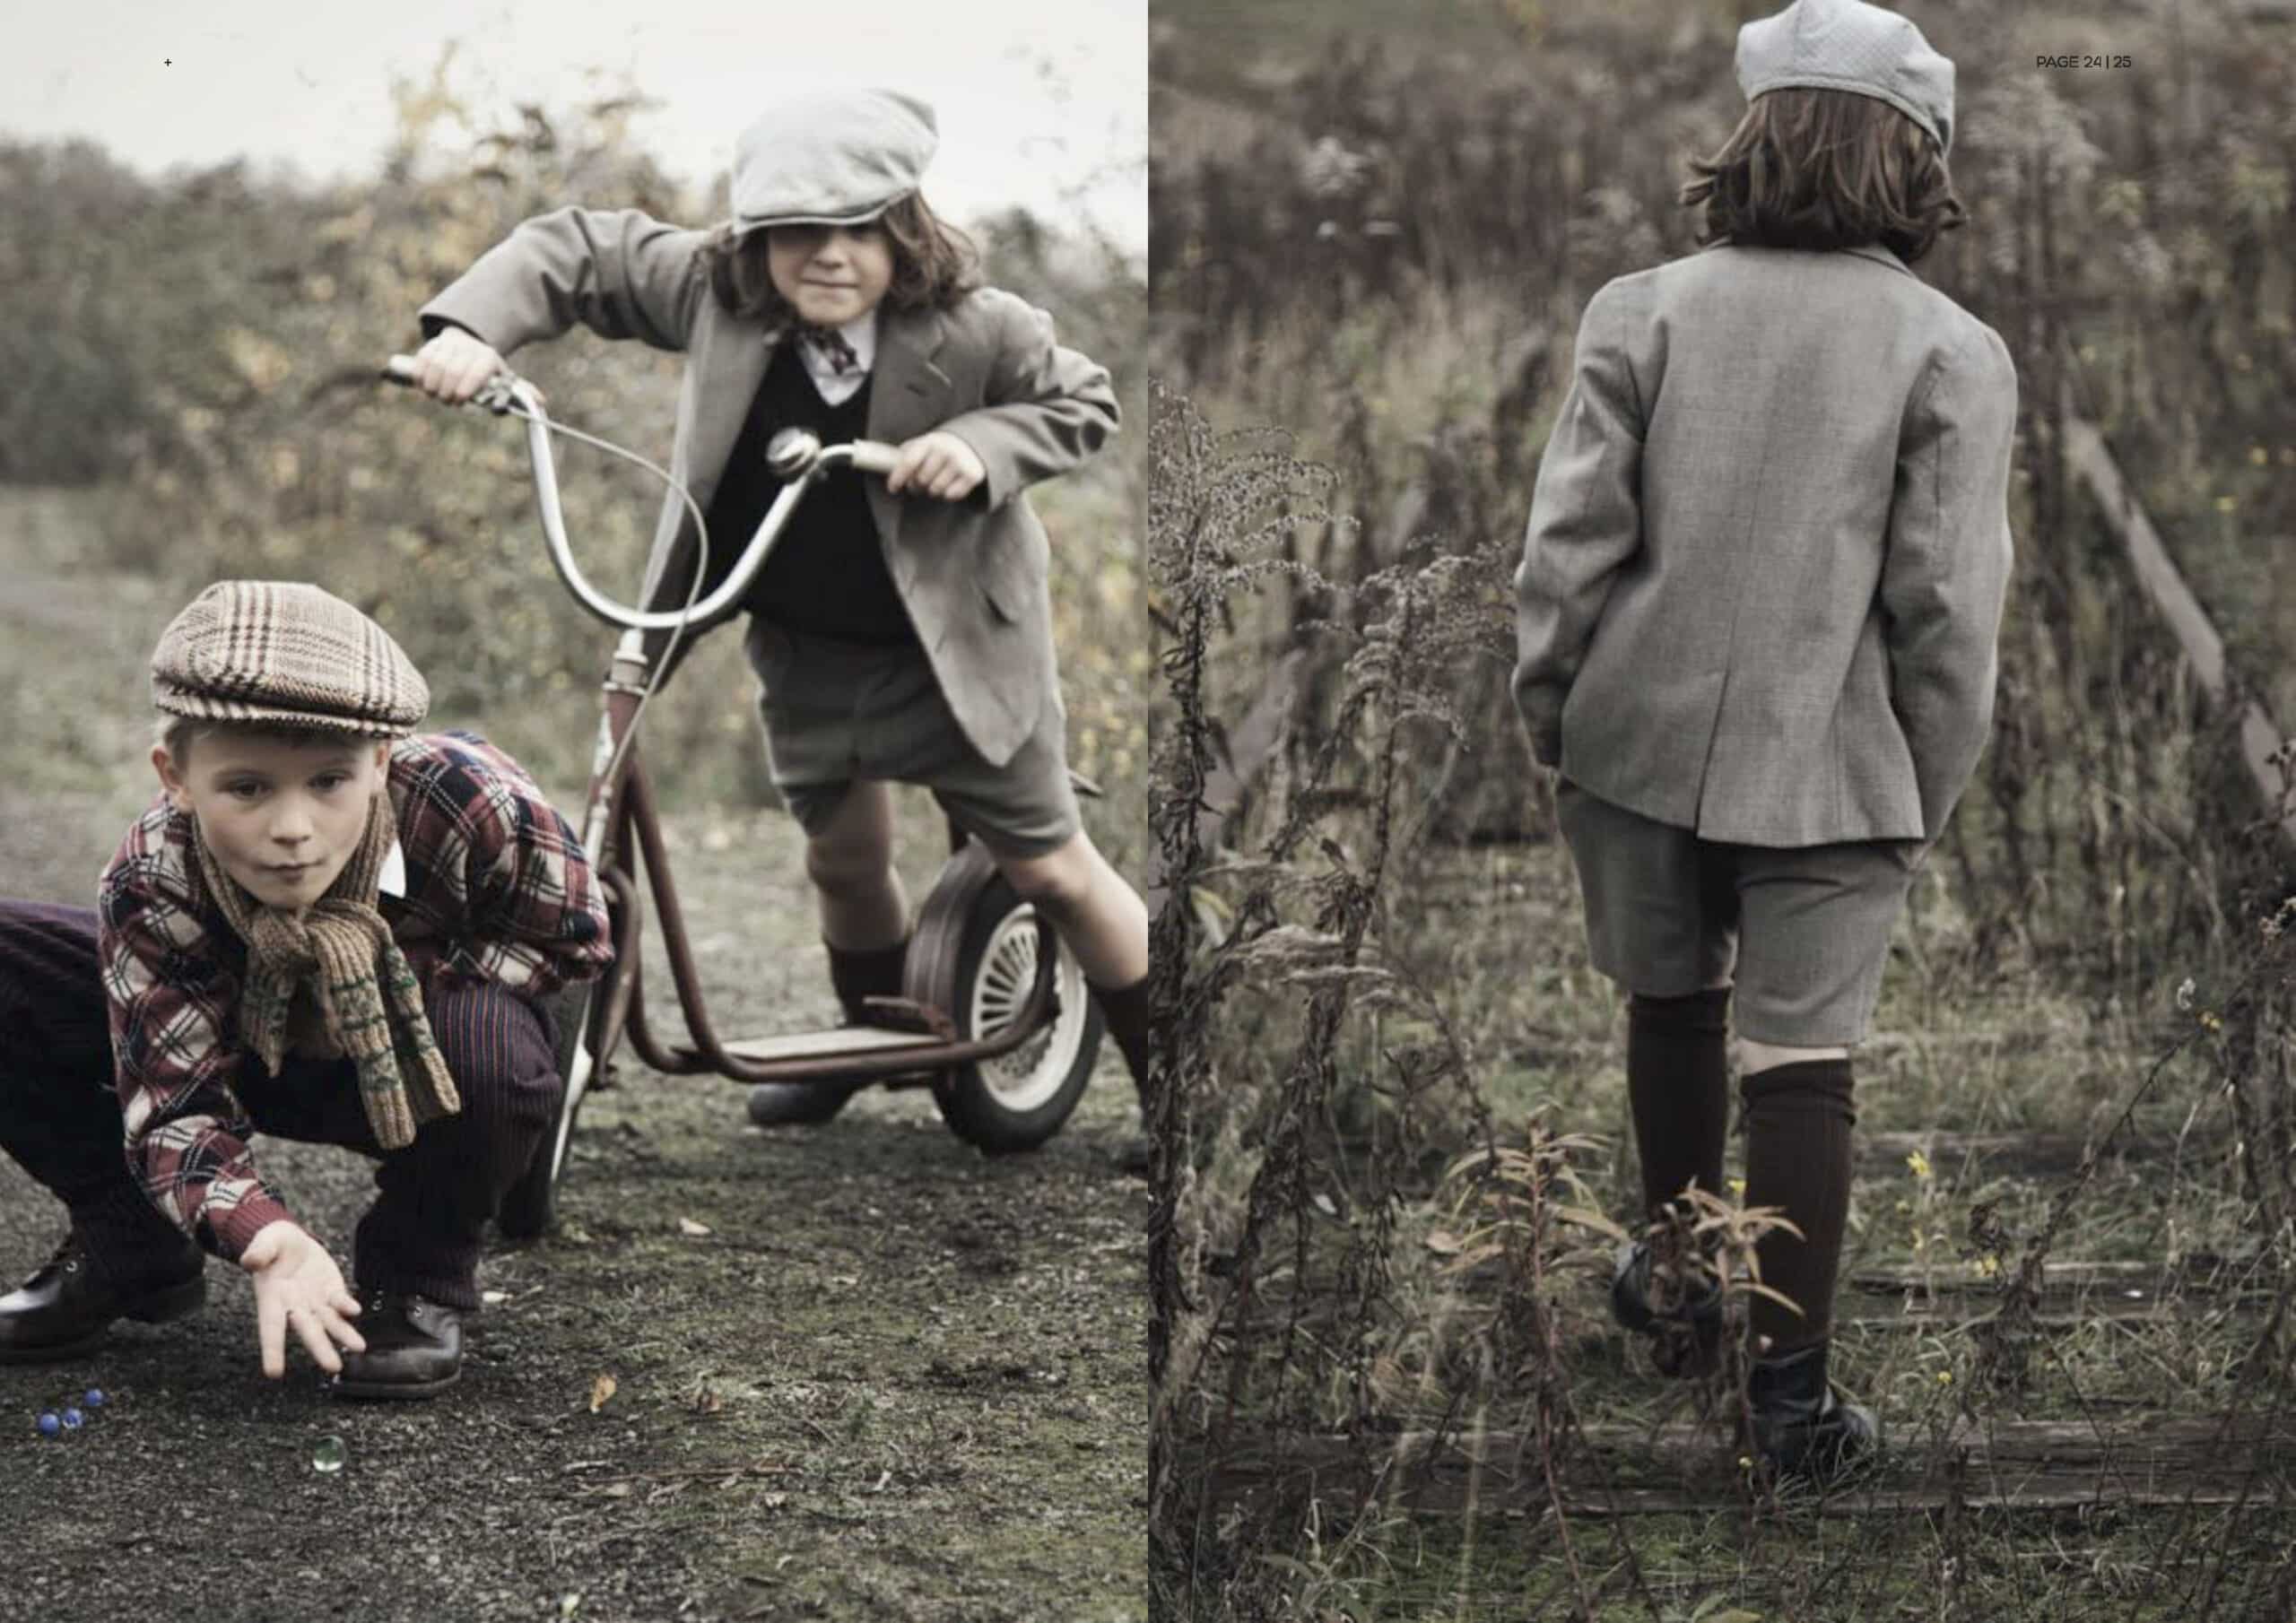 Zwei Kinder in Vintage-Kleidung spielen im Freien. Eines hockt an der Startlinie und ist bereit zum Rennen, das andere sitzt auf einem klassischen Roller und ist bereit loszufahren. Die Szene spielt in einer rustikalen, natürlichen Umgebung. © Fotografie Tomas Rodriguez